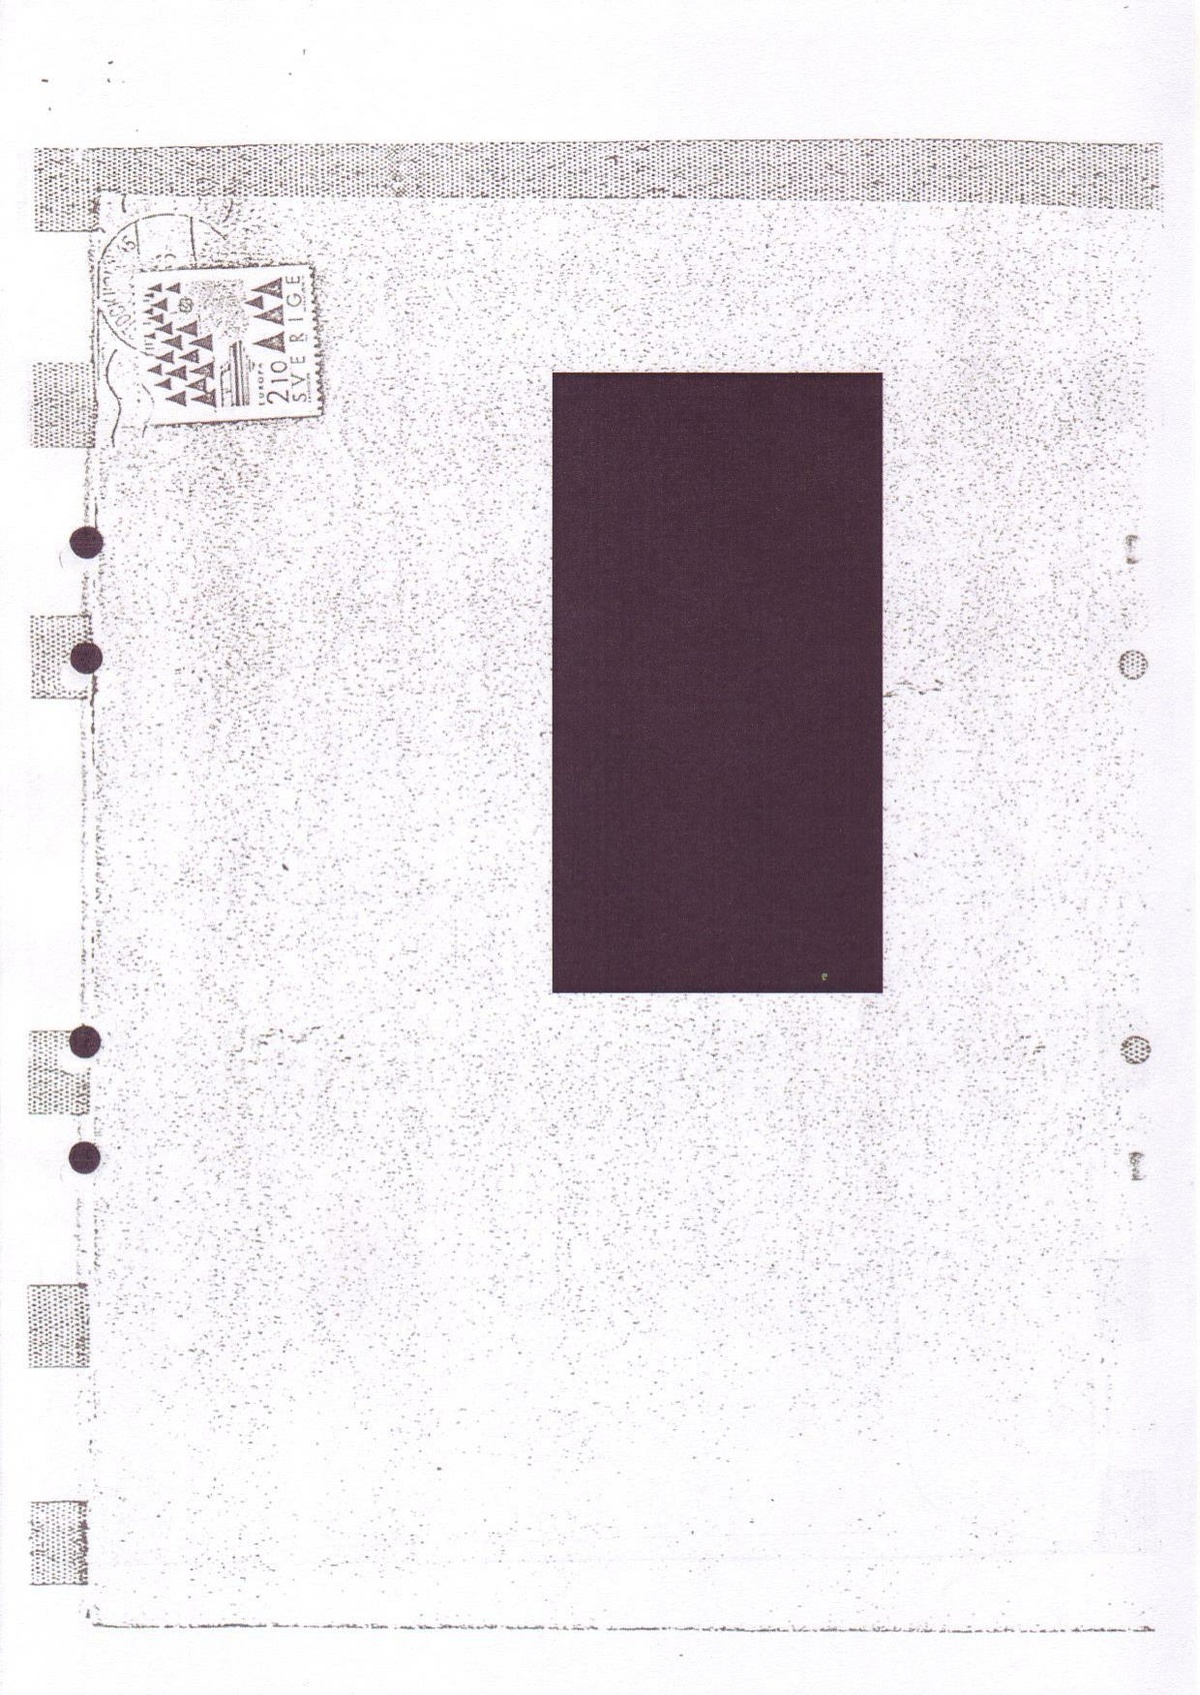 Pol-2003-12-04 D6745-08 Hotbrev från Folkets Domstol Krimundersökning.pdf